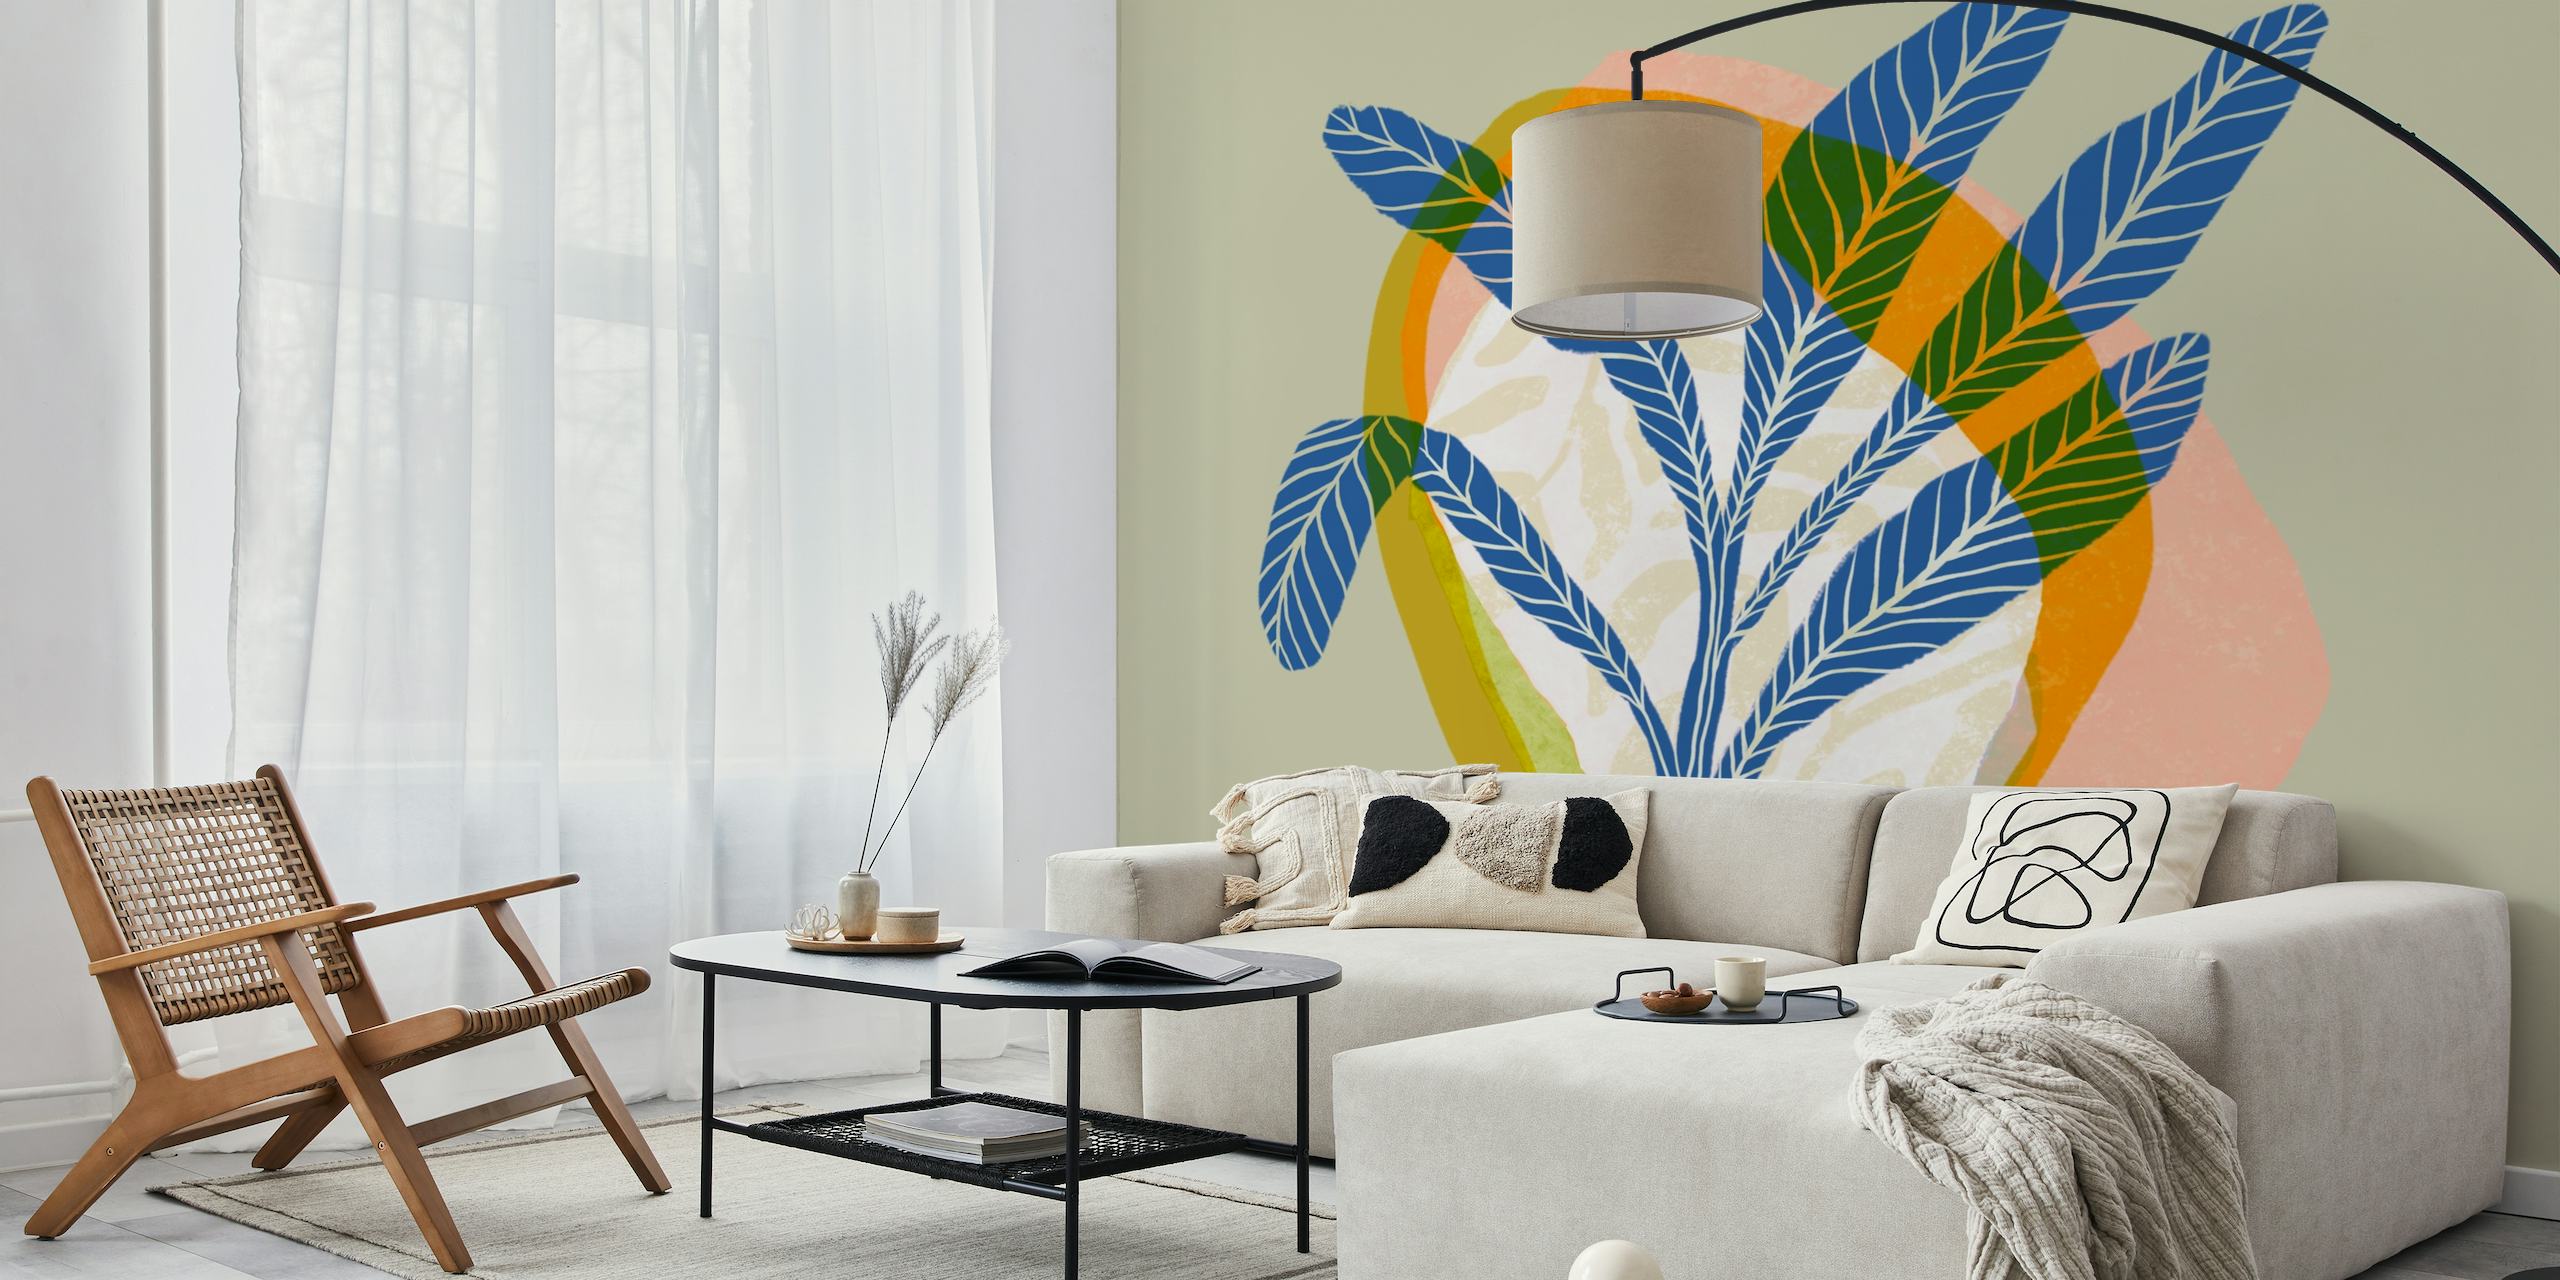 Abstracte tropische plant illustratie muurschildering met pastelkleuren